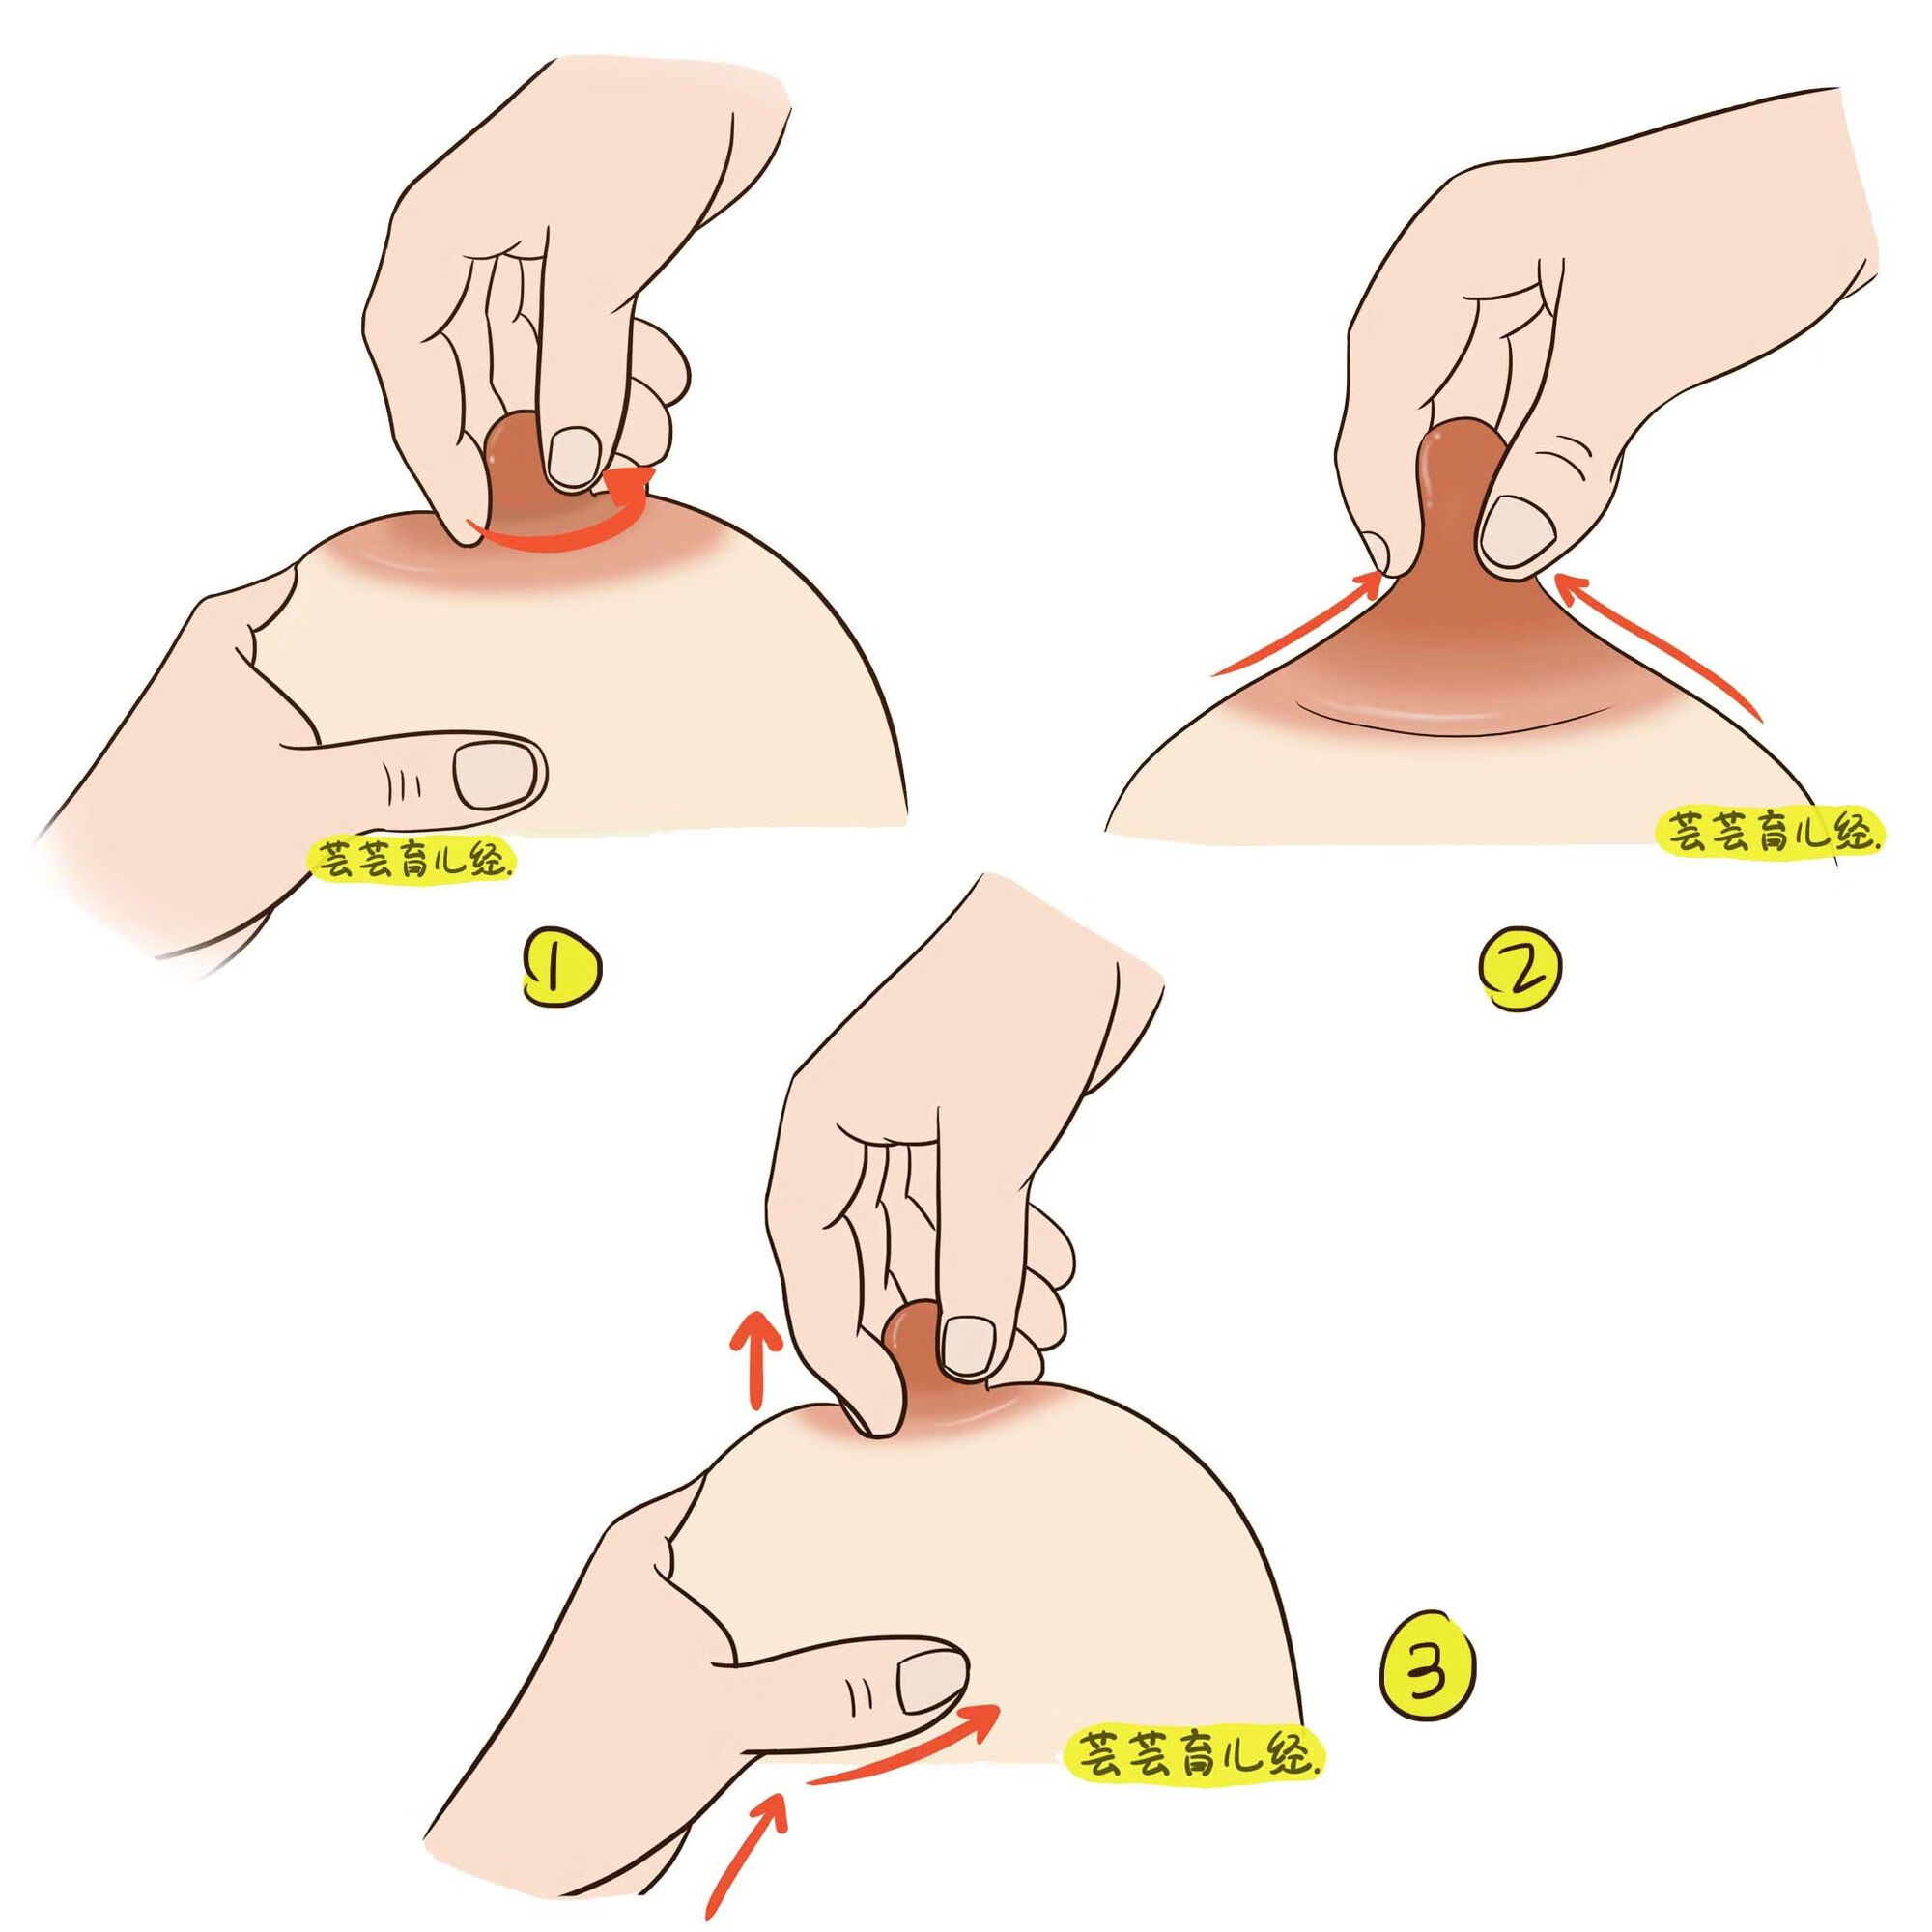 按摩乳房(1)疏通乳腺管:妈妈双手全掌,由乳房四周沿乳腺管轻轻向乳头